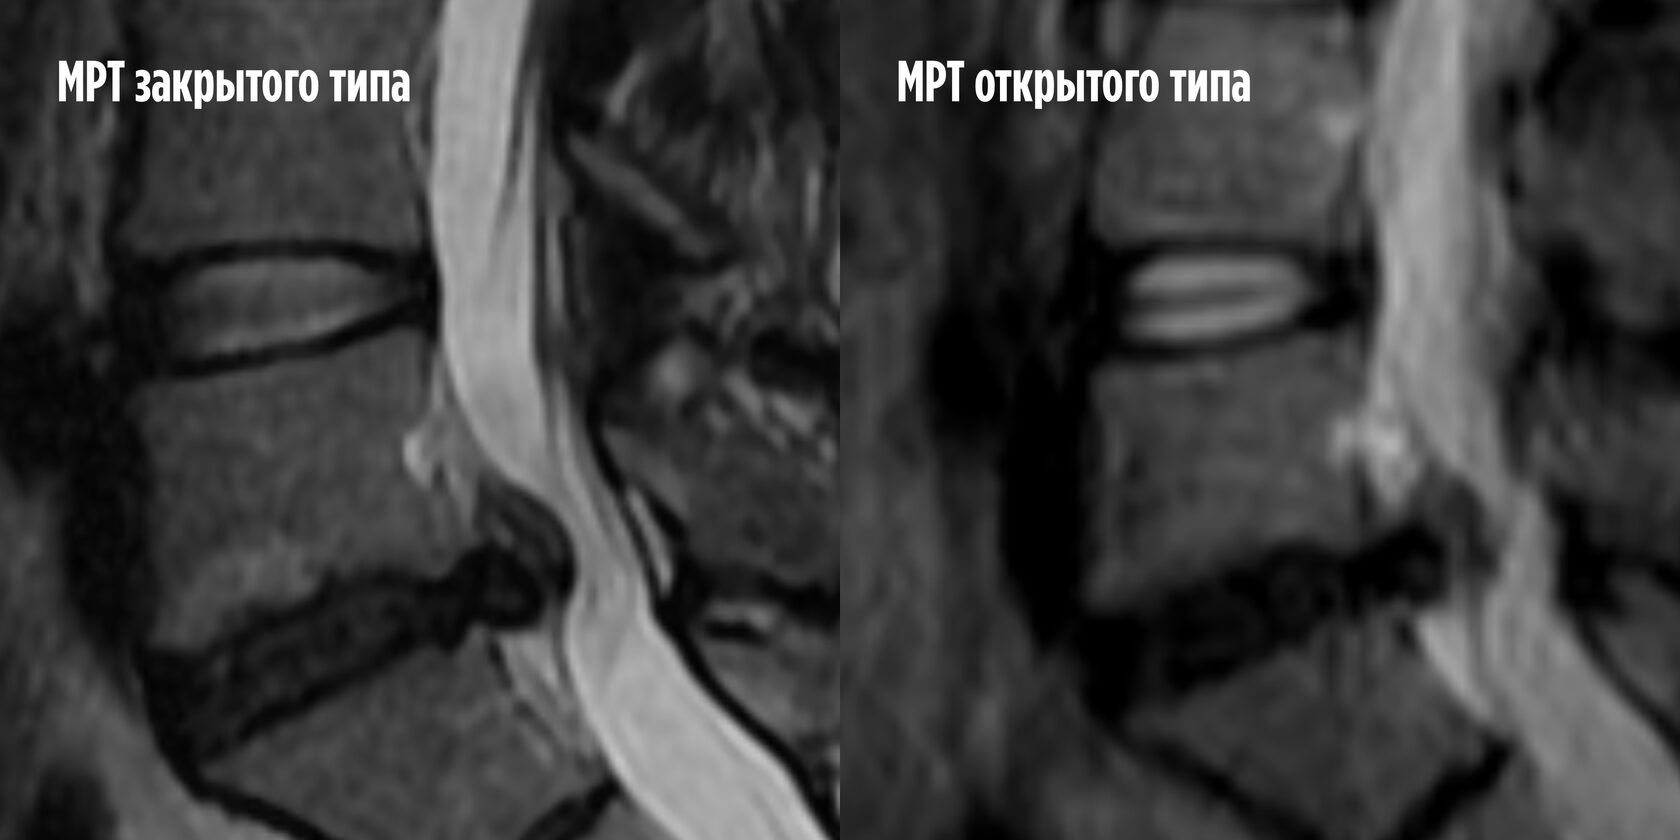 Сравнение снимков межпозвоночной грыжи одного пациента на разных аппаратах МРТ